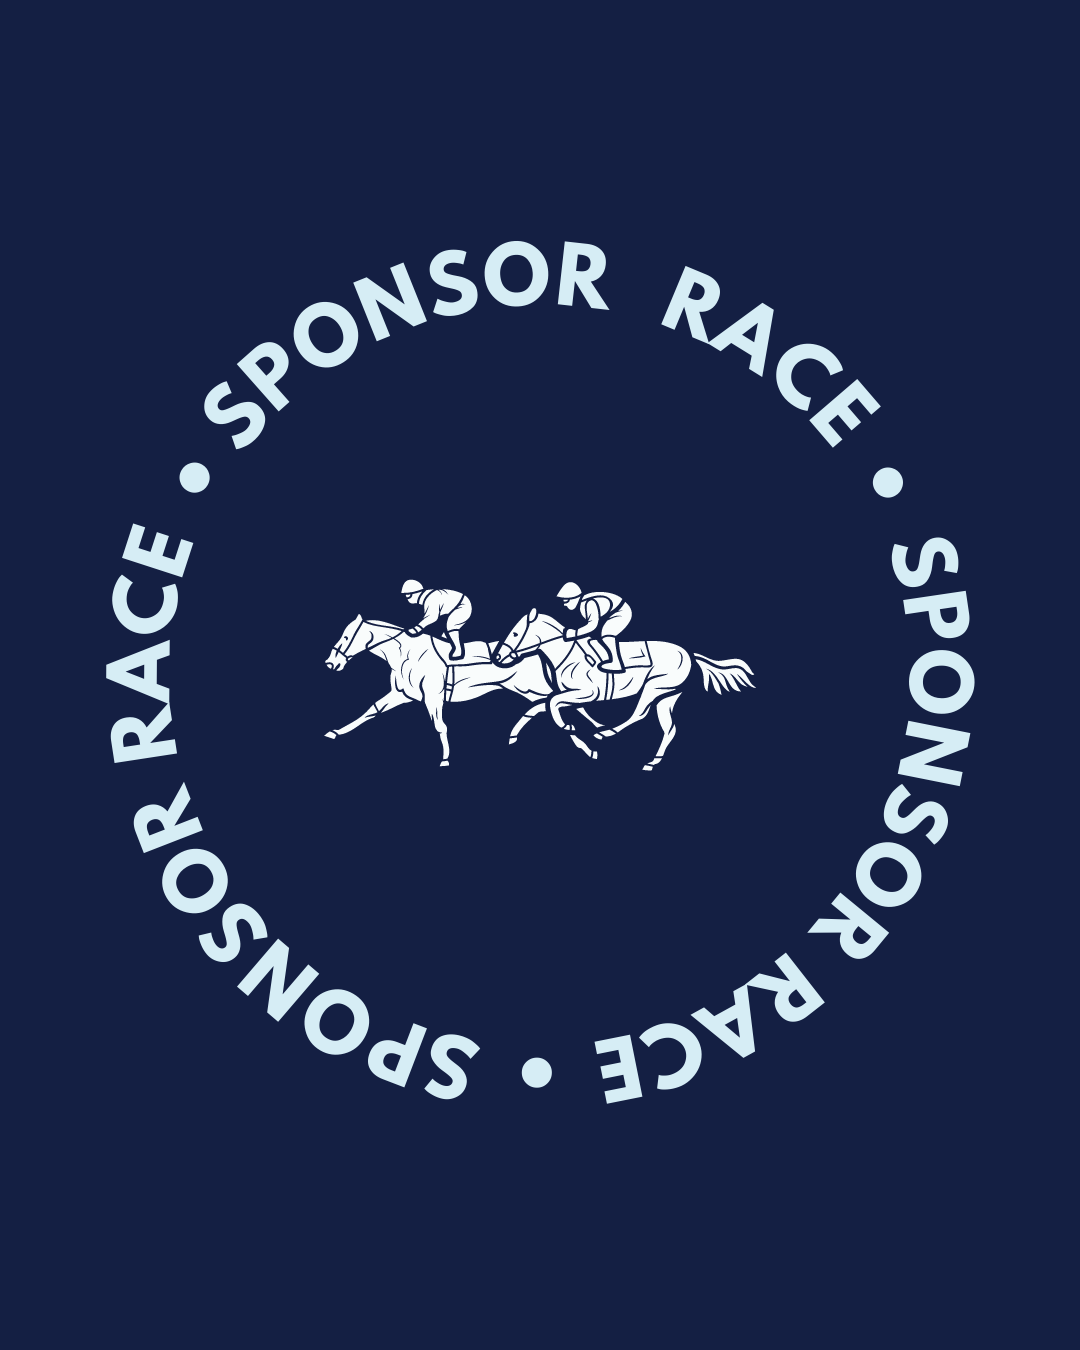 Sponsor a Race